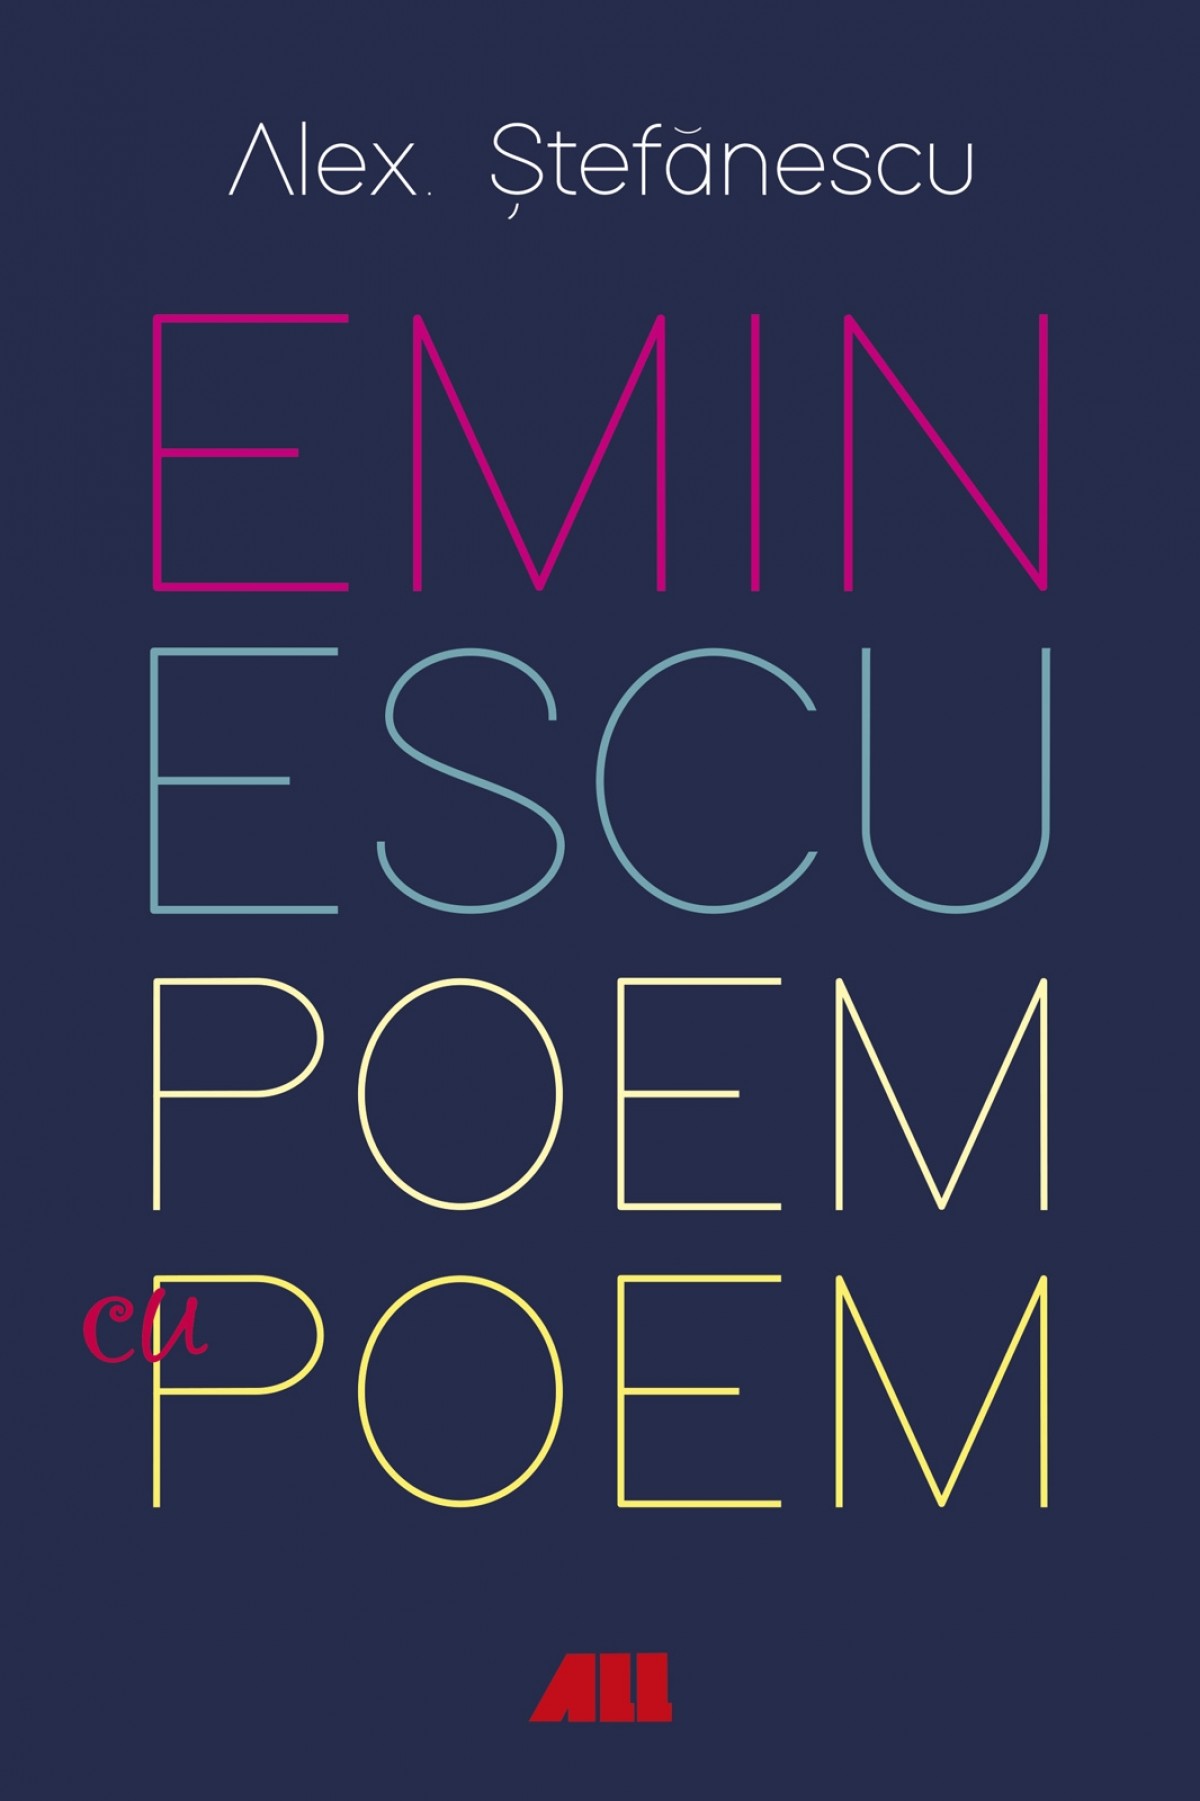 Eminescu, poem cu poem. La o noua lectura. Antumele | Alex Stefanescu ALL poza bestsellers.ro